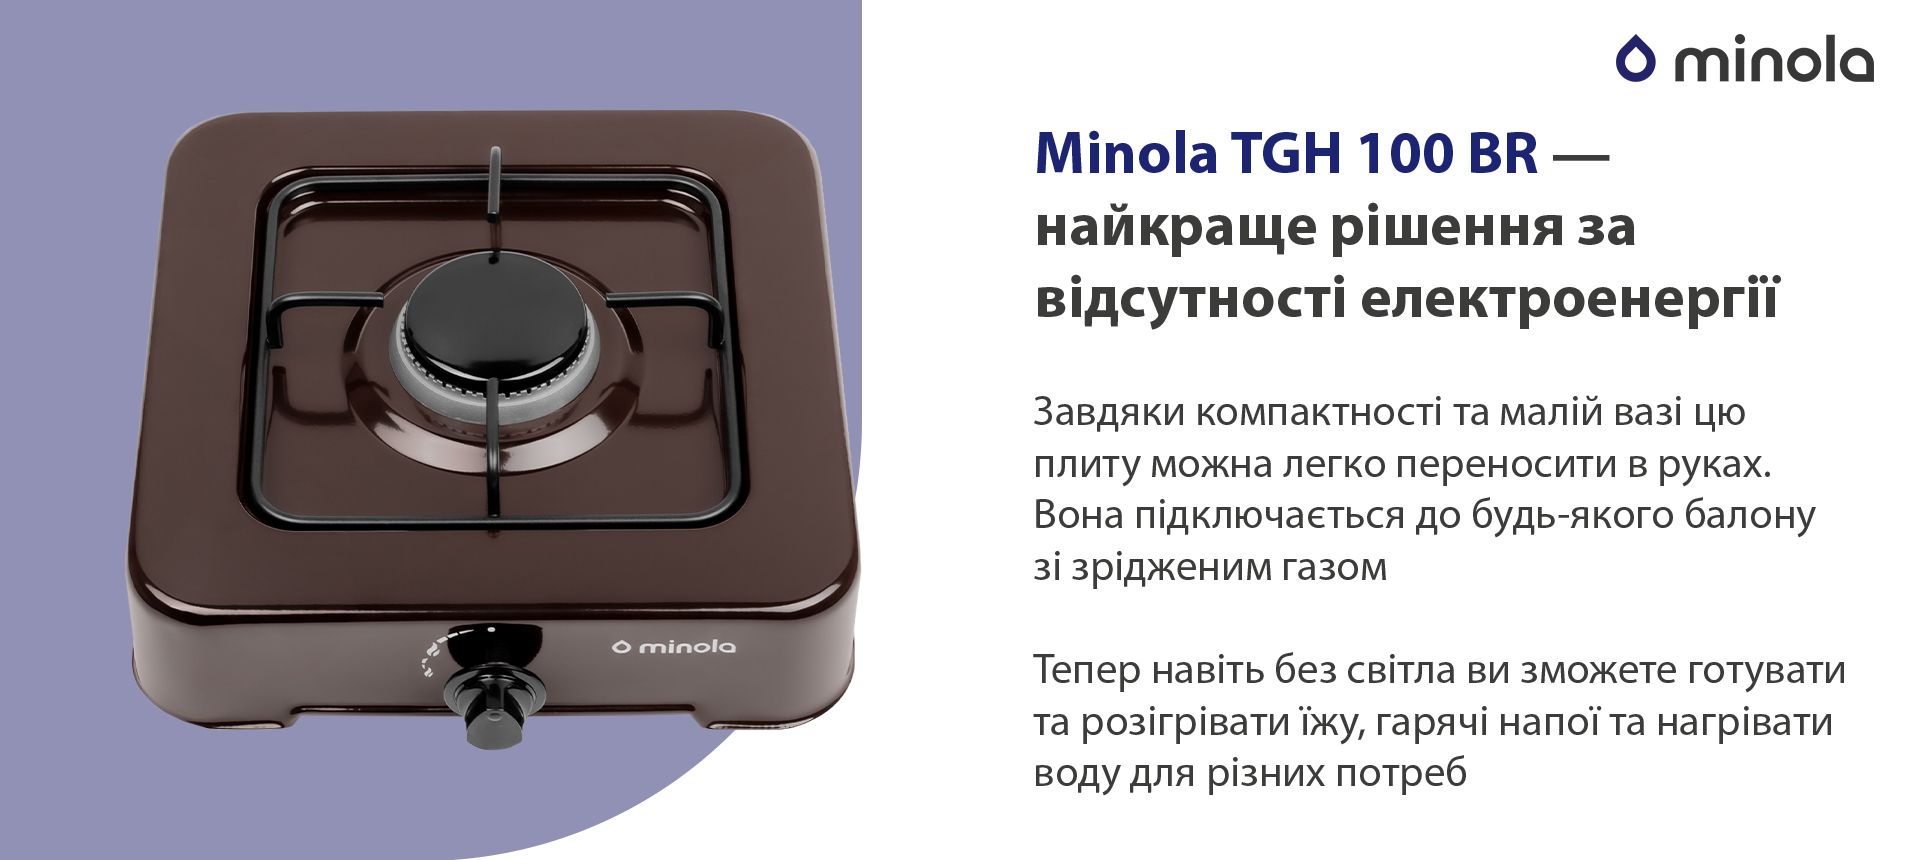 Плита настільна Minola TGH 100 BR характеристики - фотографія 7